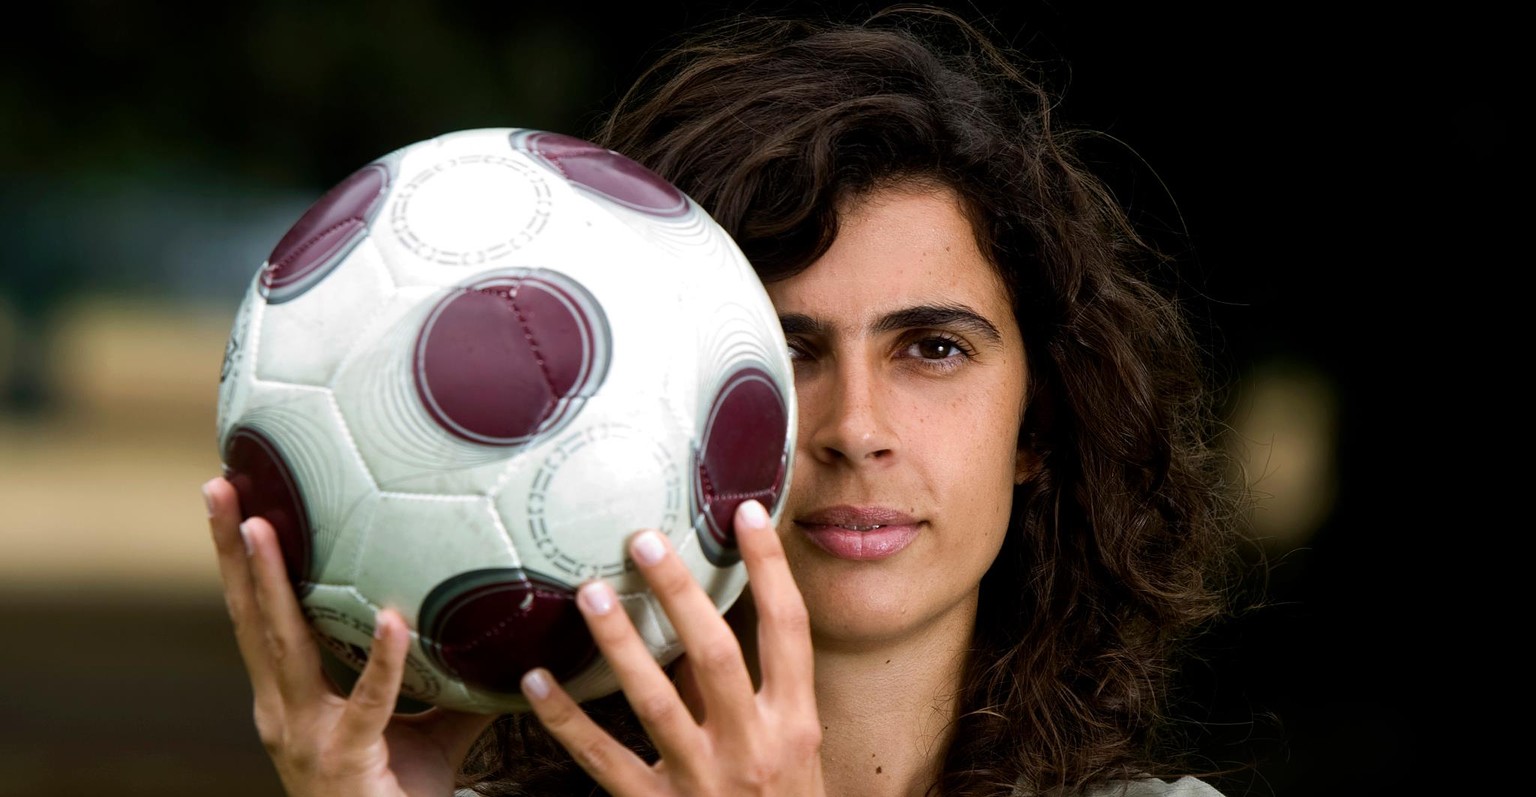 Helena Costa – schlussendlich geht es bei Mann und Frau um die gleiche Sache: Fussball.